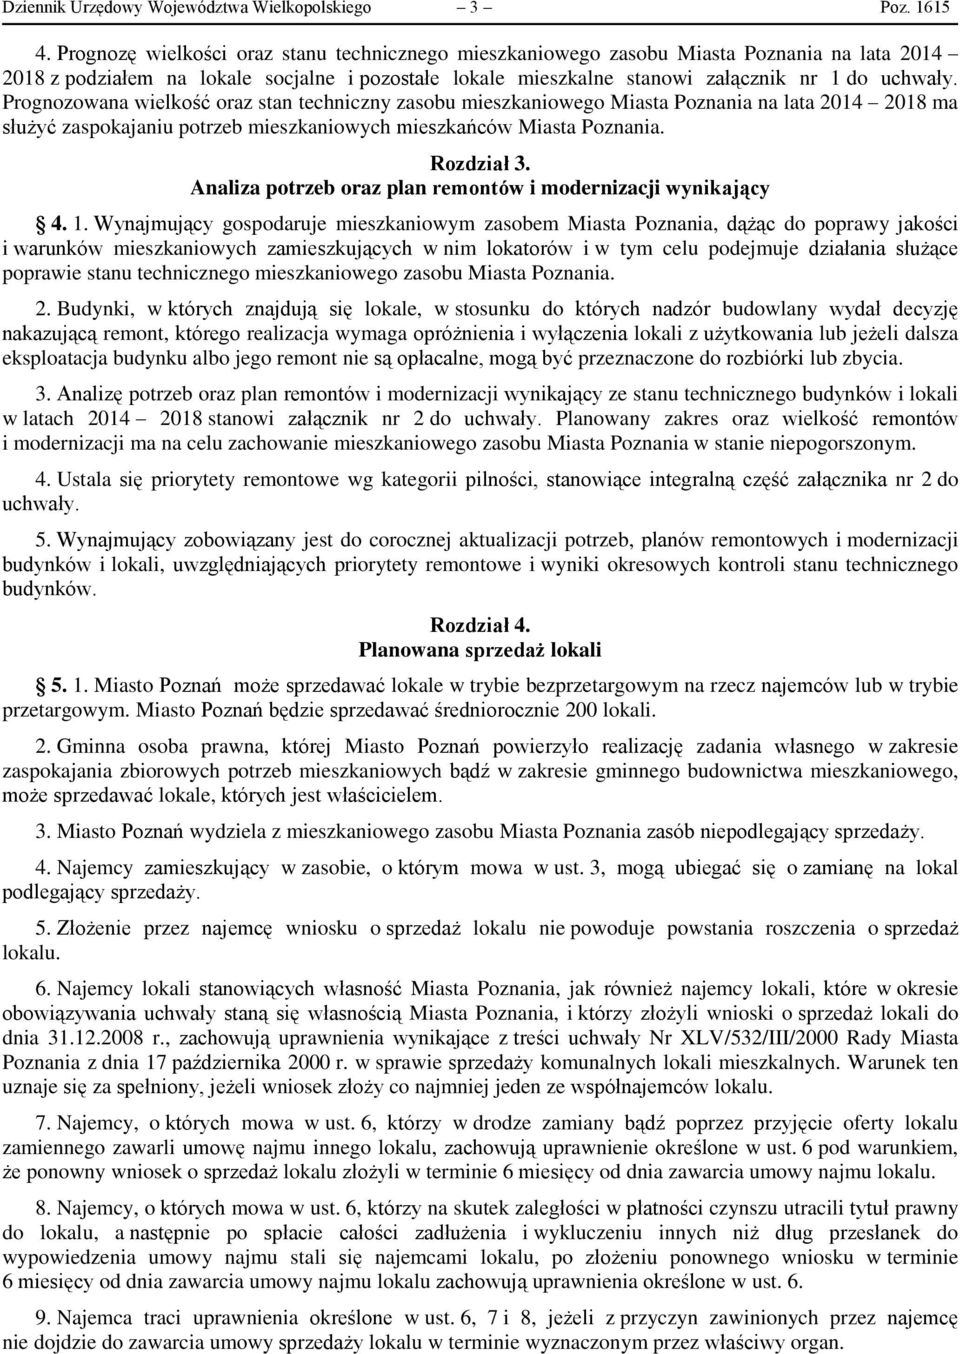 Prognozowana wielkość oraz stan techniczny zasobu mieszkaniowego Miasta Poznania na lata 2014 2018 ma służyć zaspokajaniu potrzeb mieszkaniowych mieszkańców Miasta Poznania. Rozdział 3.